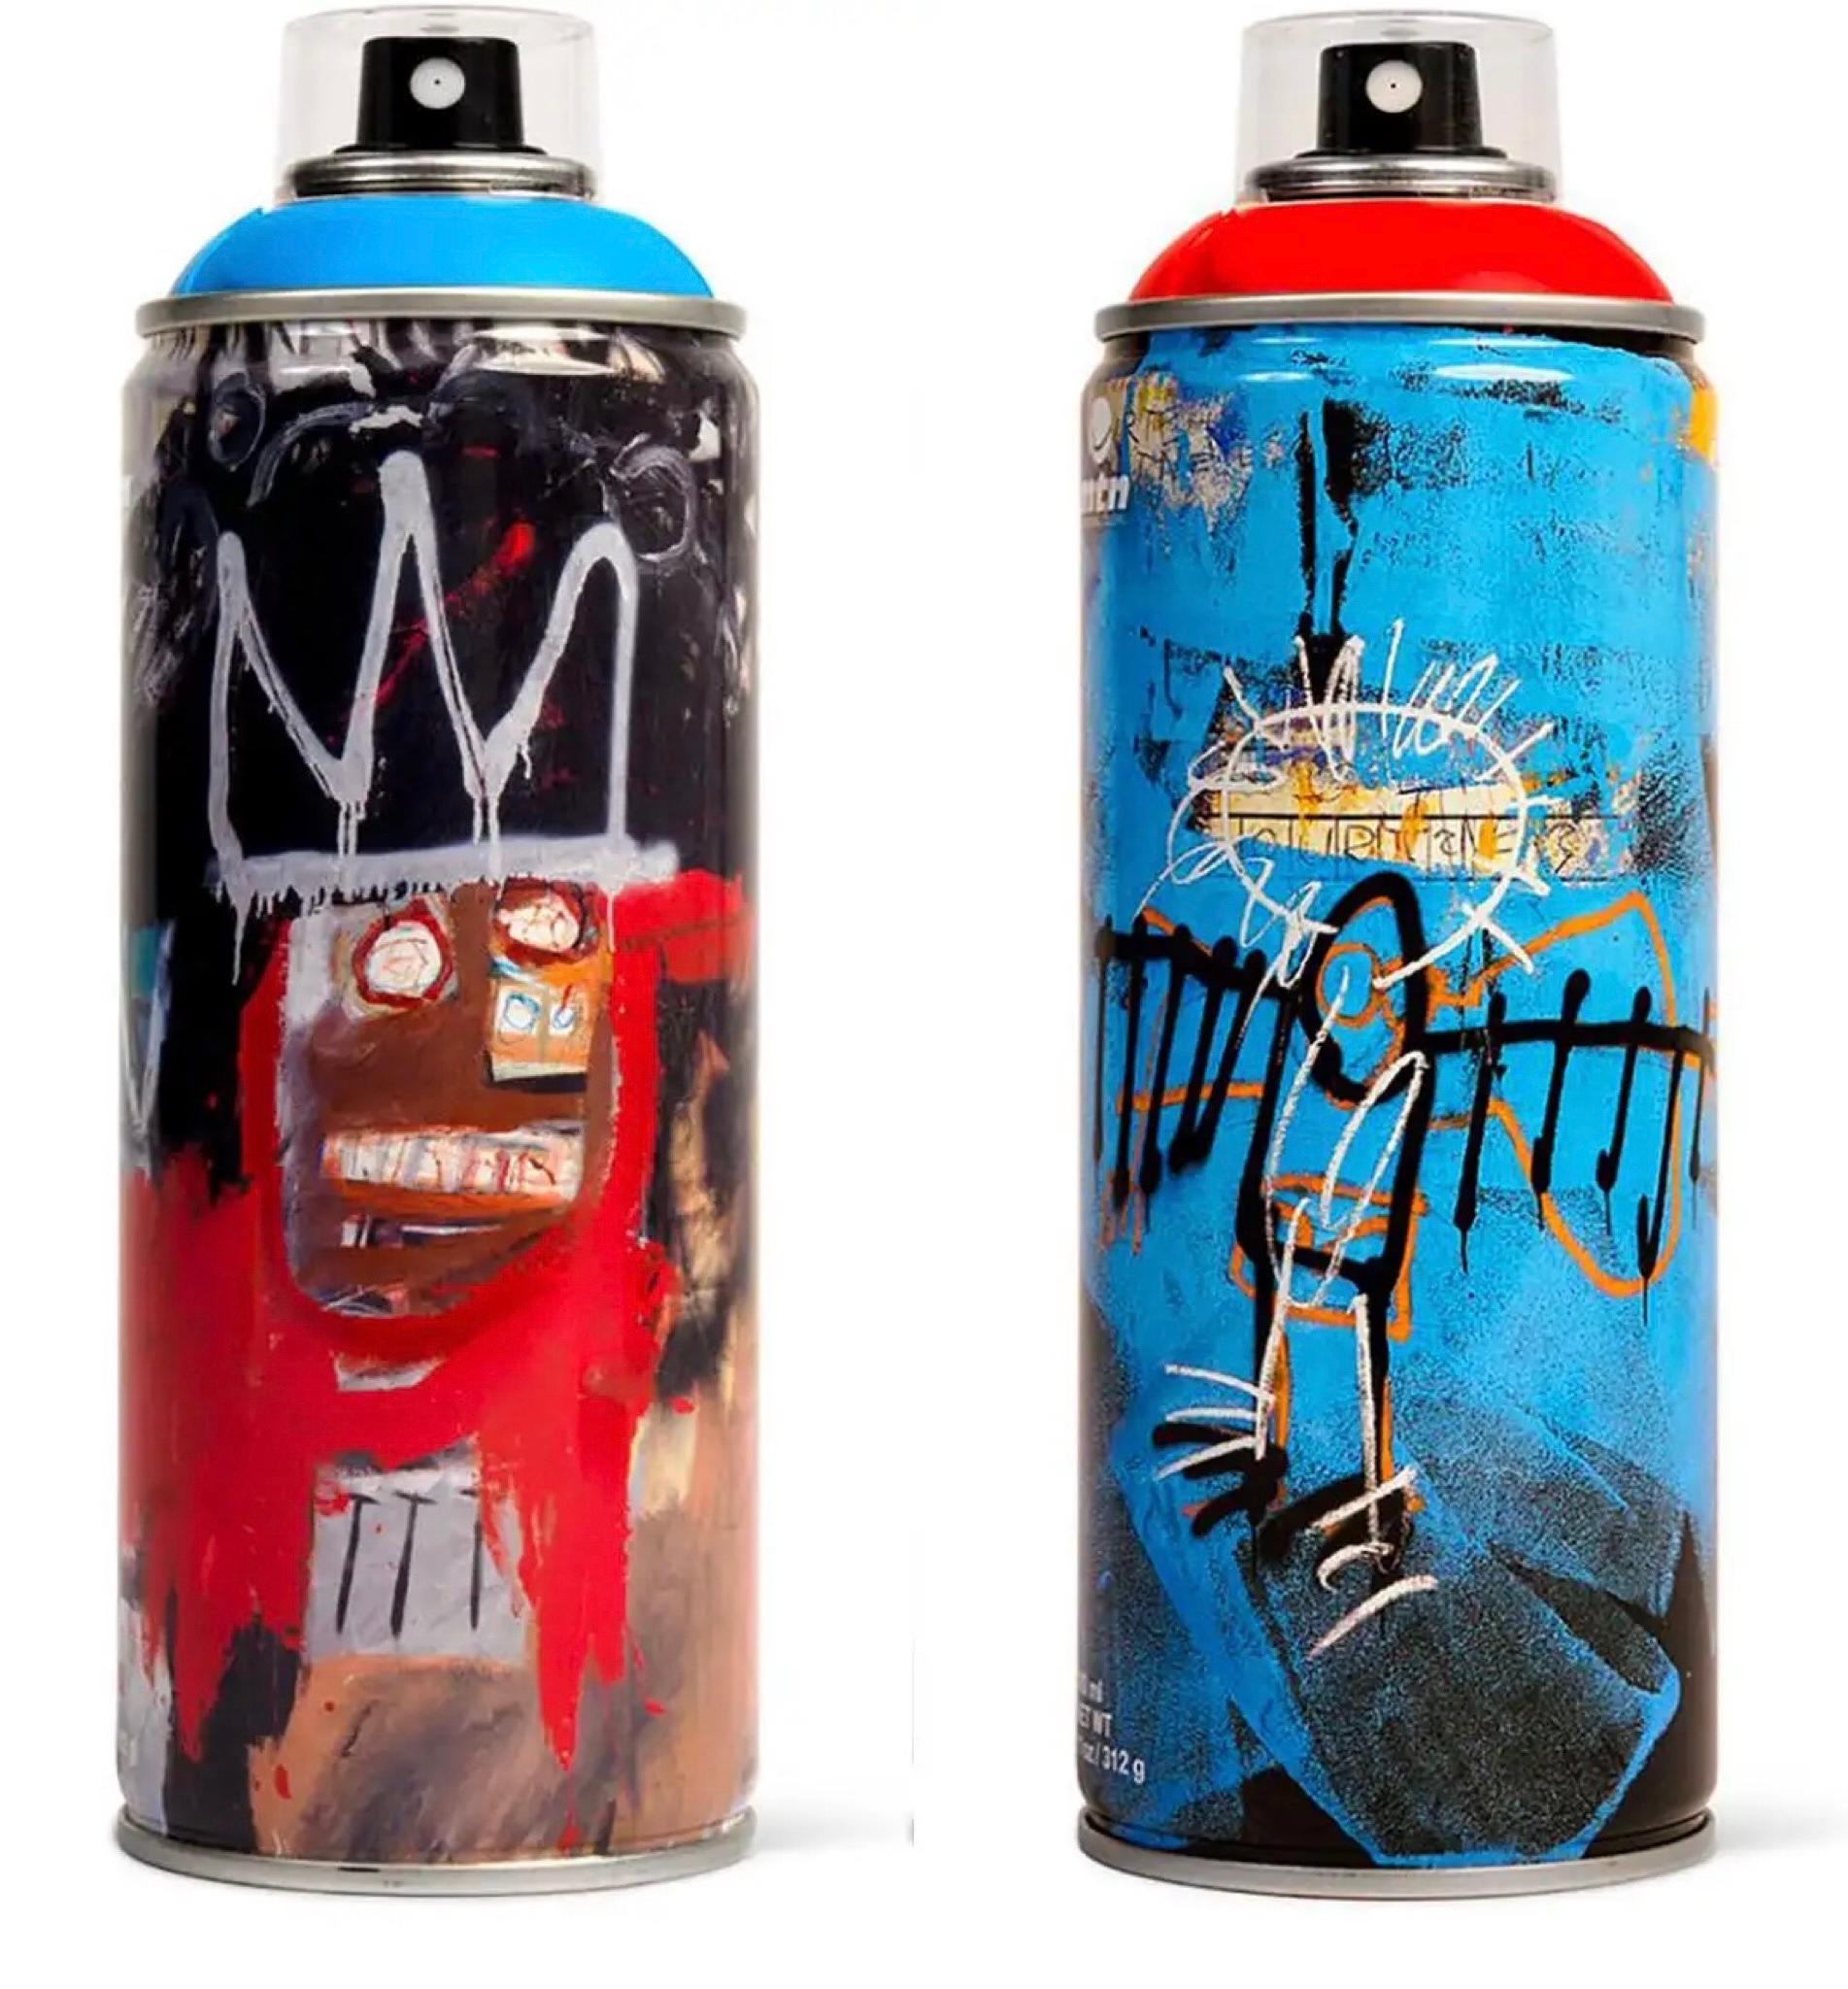 Sprühfarbendosen von Jean-Michel Basquiat 2017